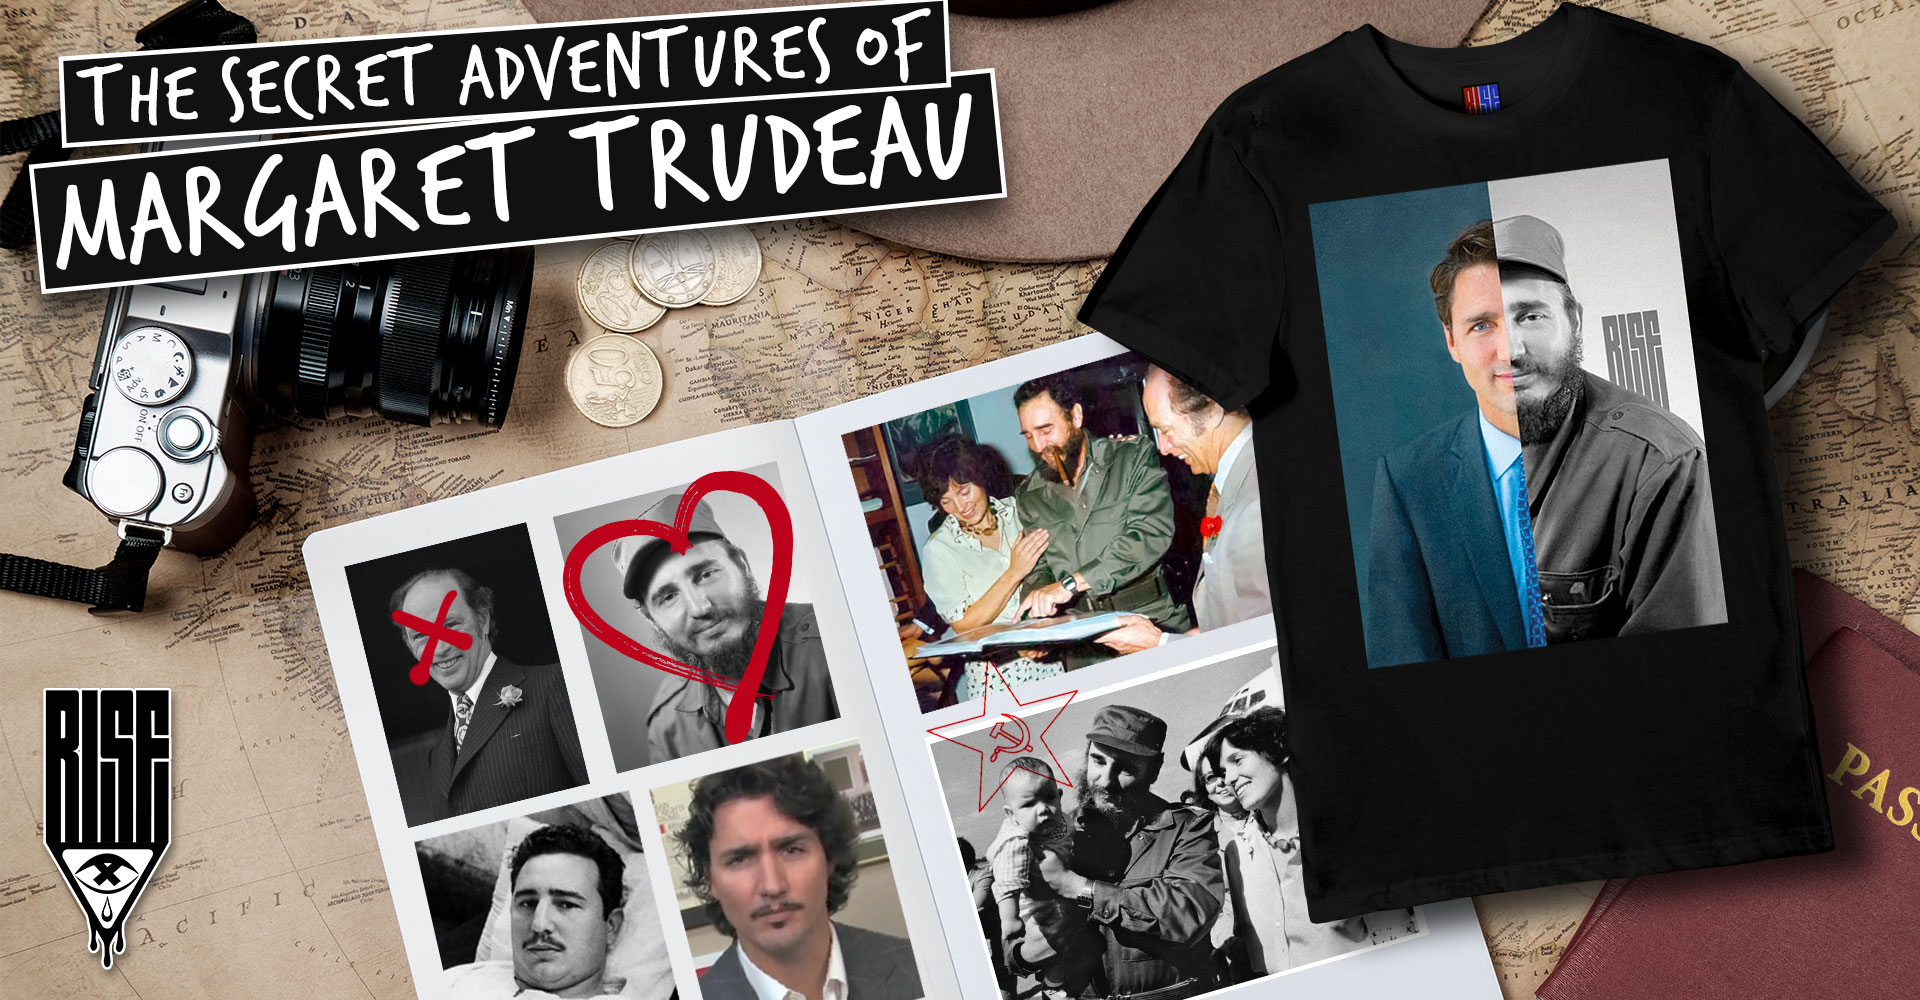 The Secret Adventures of Margaret Trudeau // RISE Attire